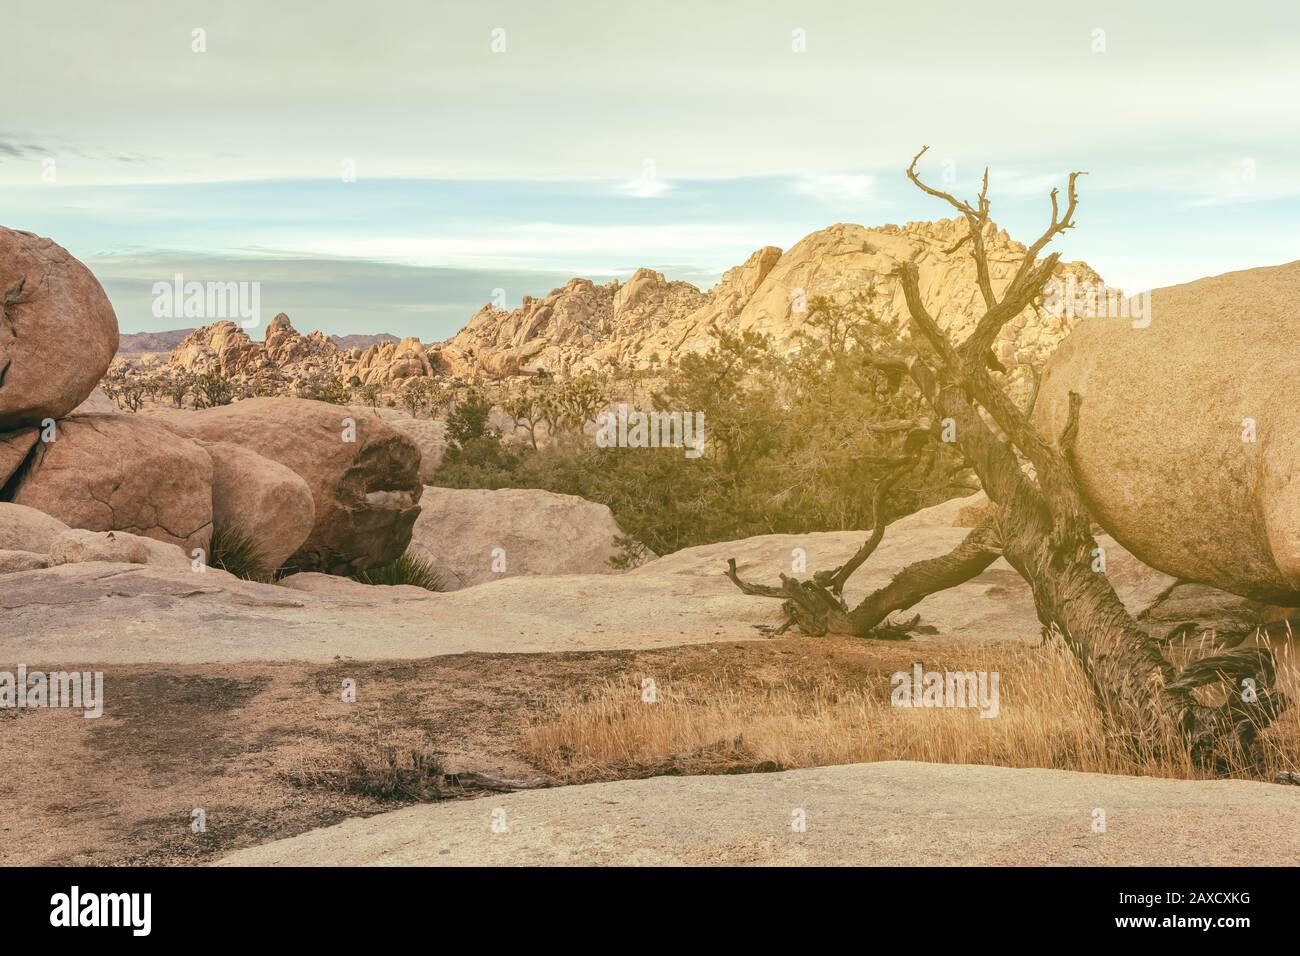 Felsformationen und die Landschaft im Joshua Tree National Park, Kalifornien, Vereinigte Staaten. Stockfoto